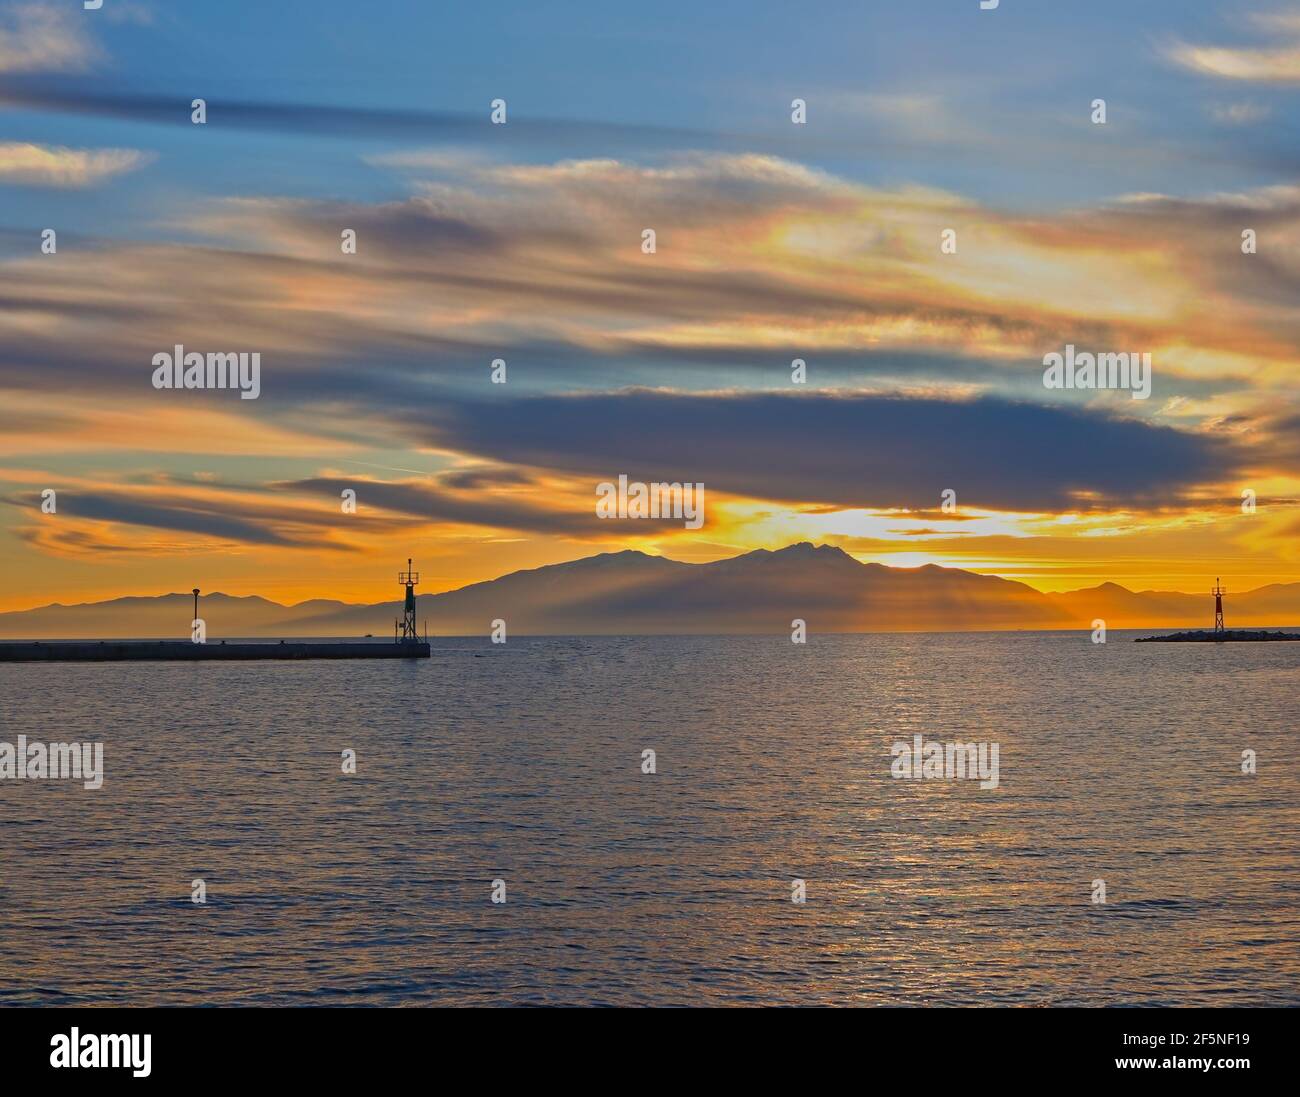 Epanomi, Thessaloniki, Griechenland. Ormos Epanomis, der Eingang des Docks bei Sonnenuntergang. Stockfoto